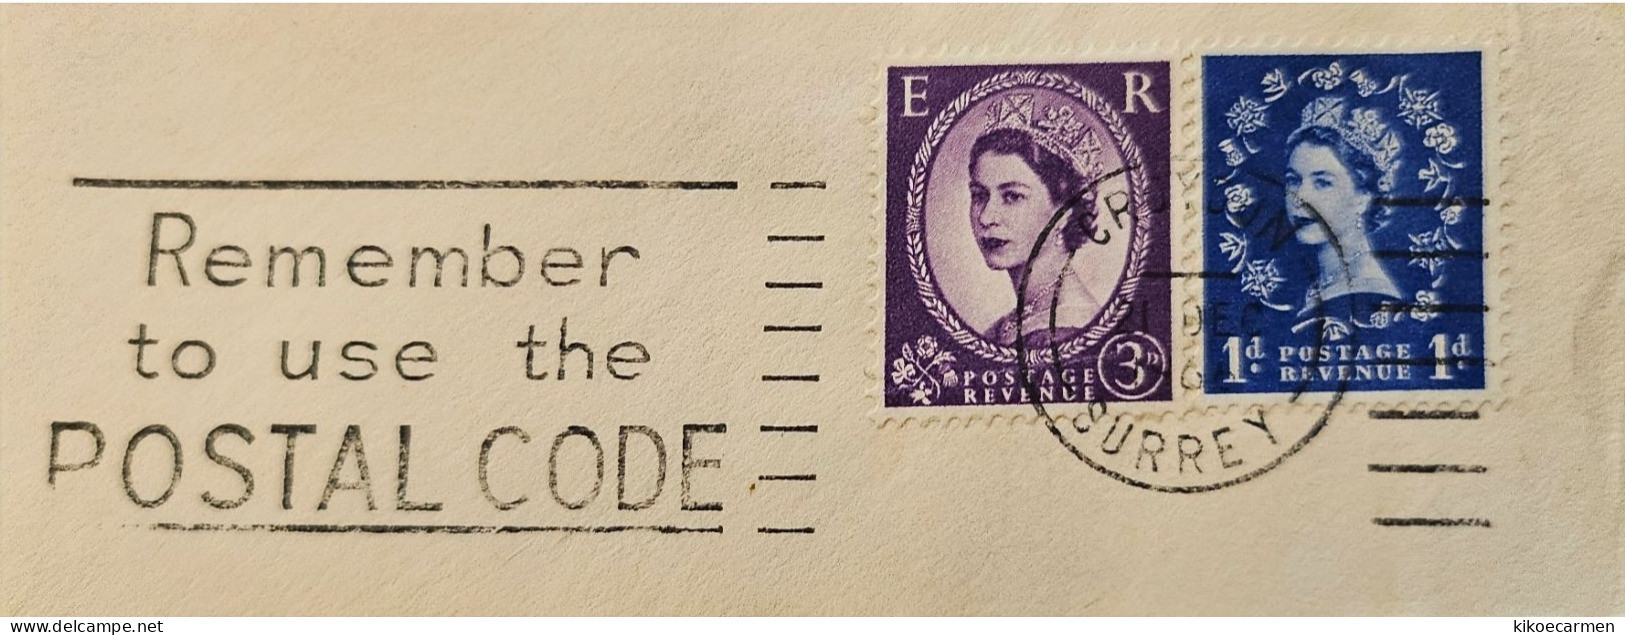 ZIP CODE Postal Code History Of Post Cancel Cancellation Postmark - Zipcode